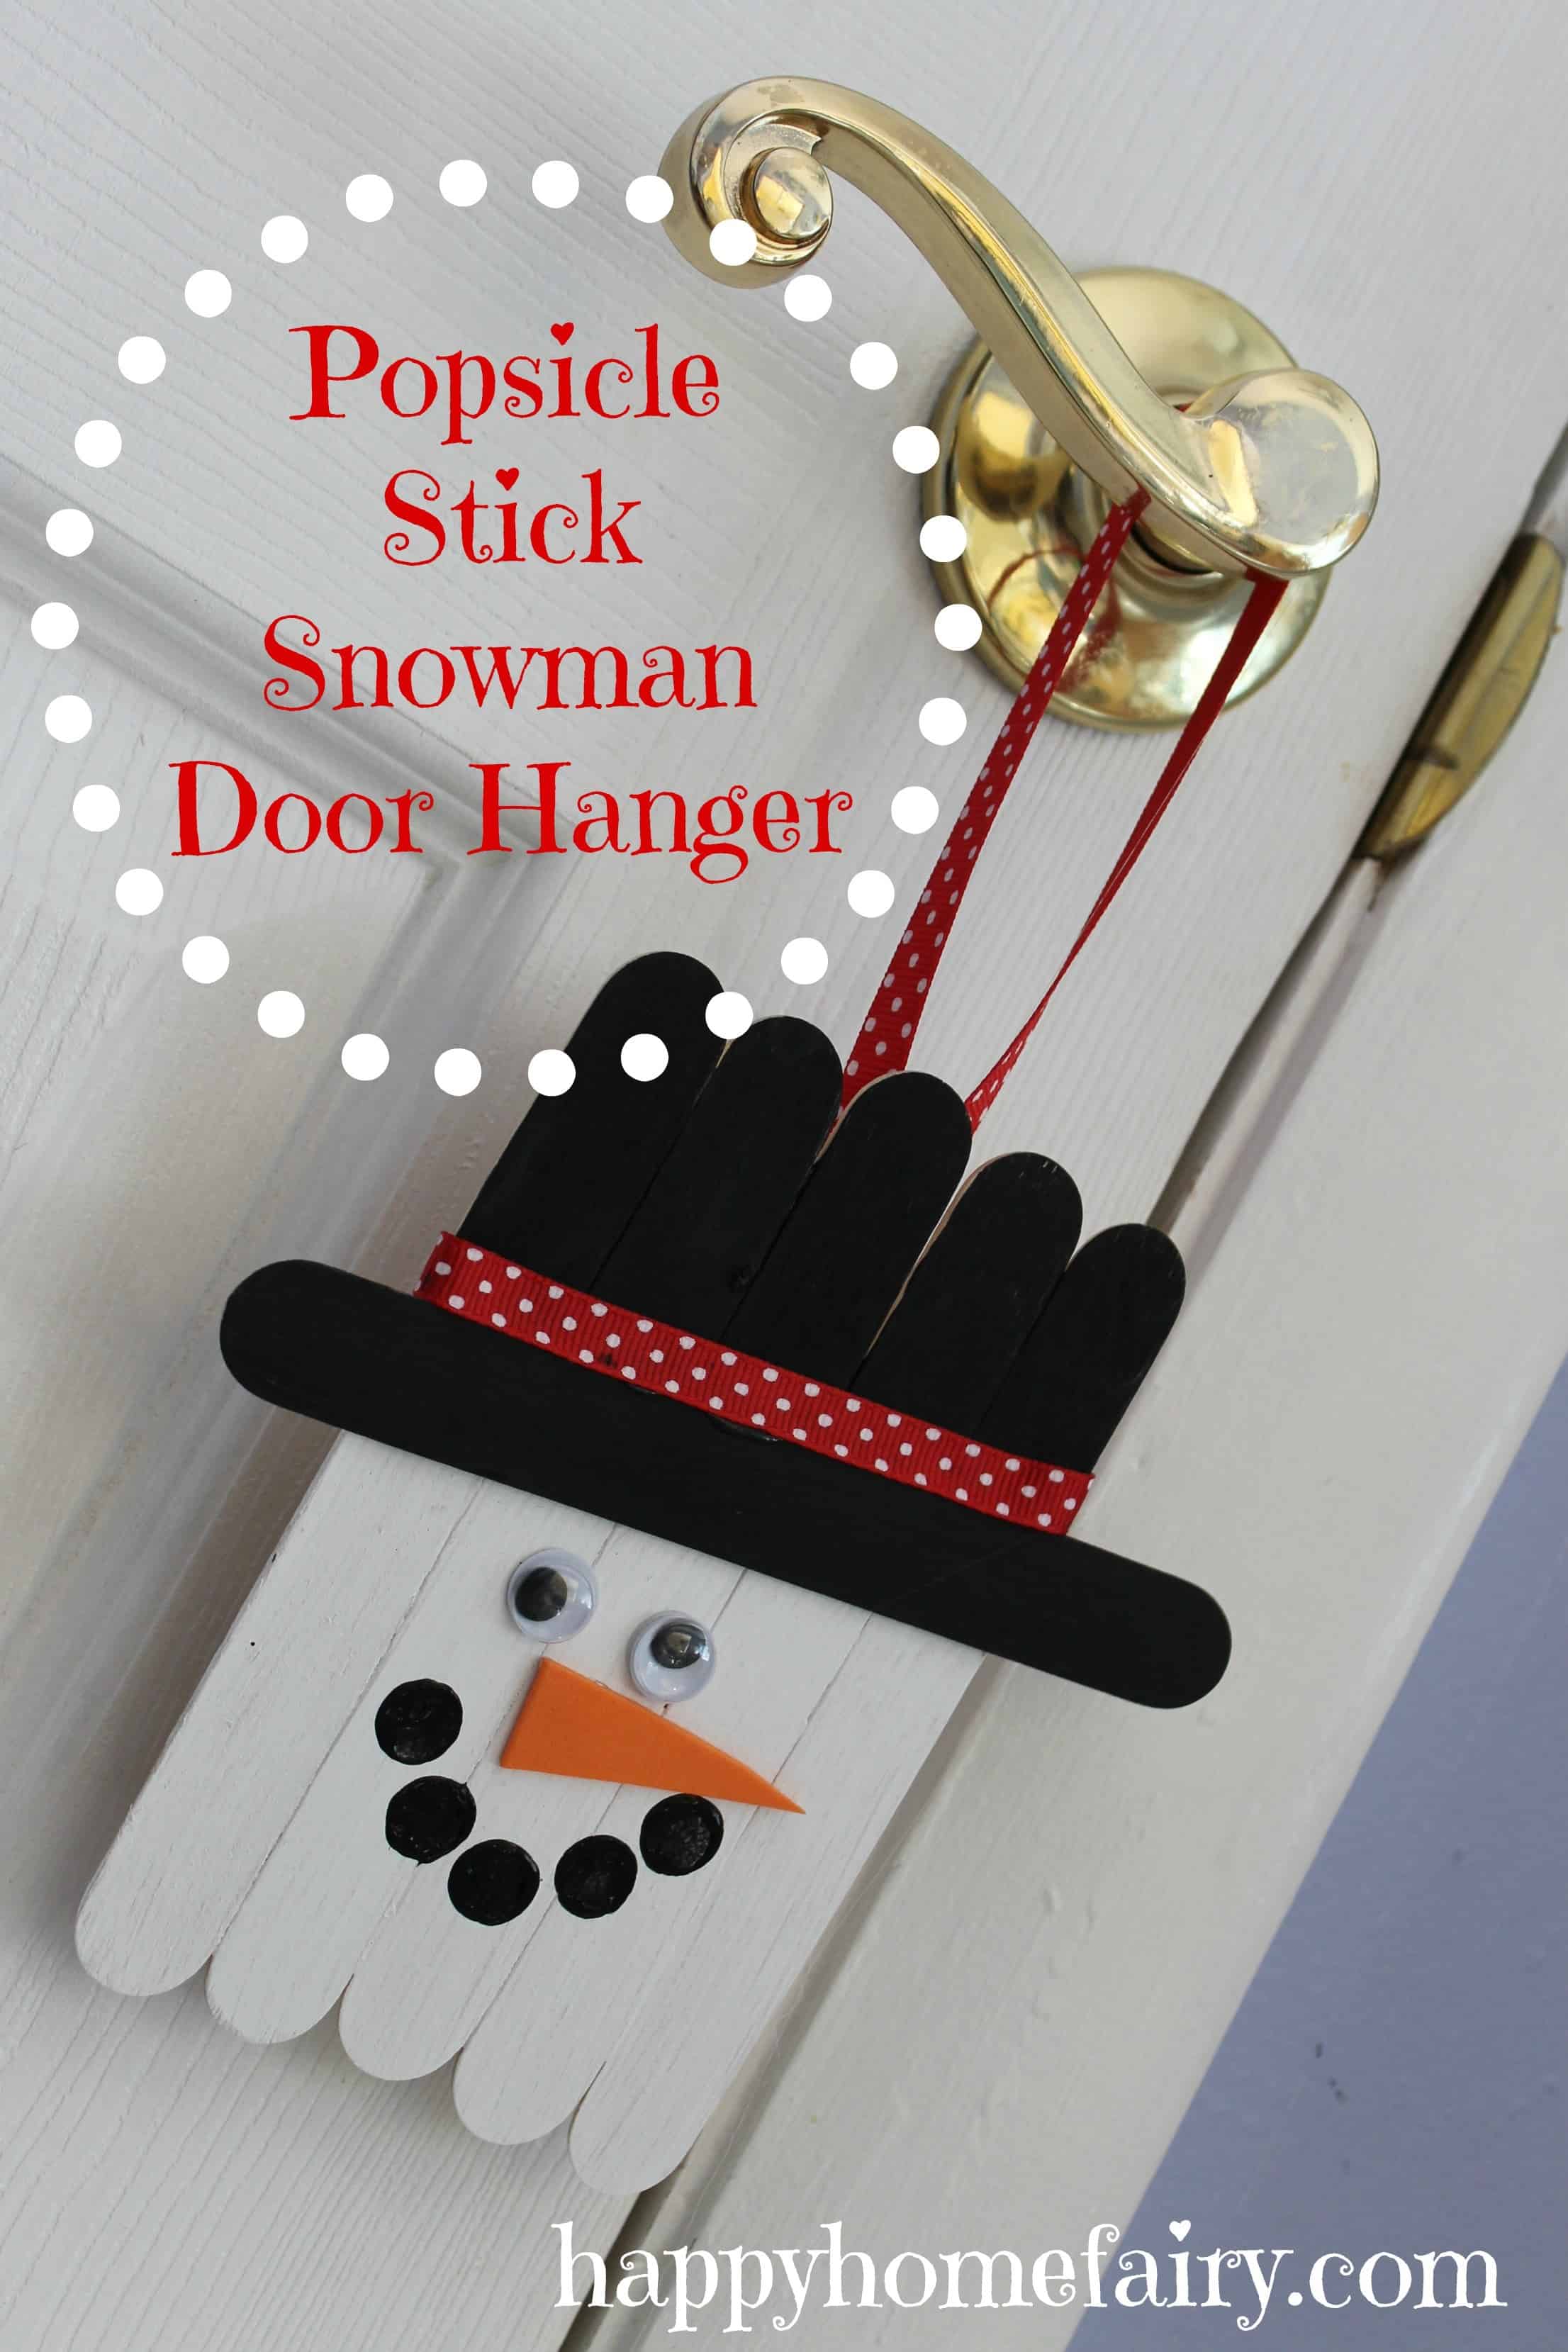 Popsicle stick snowman door hanger